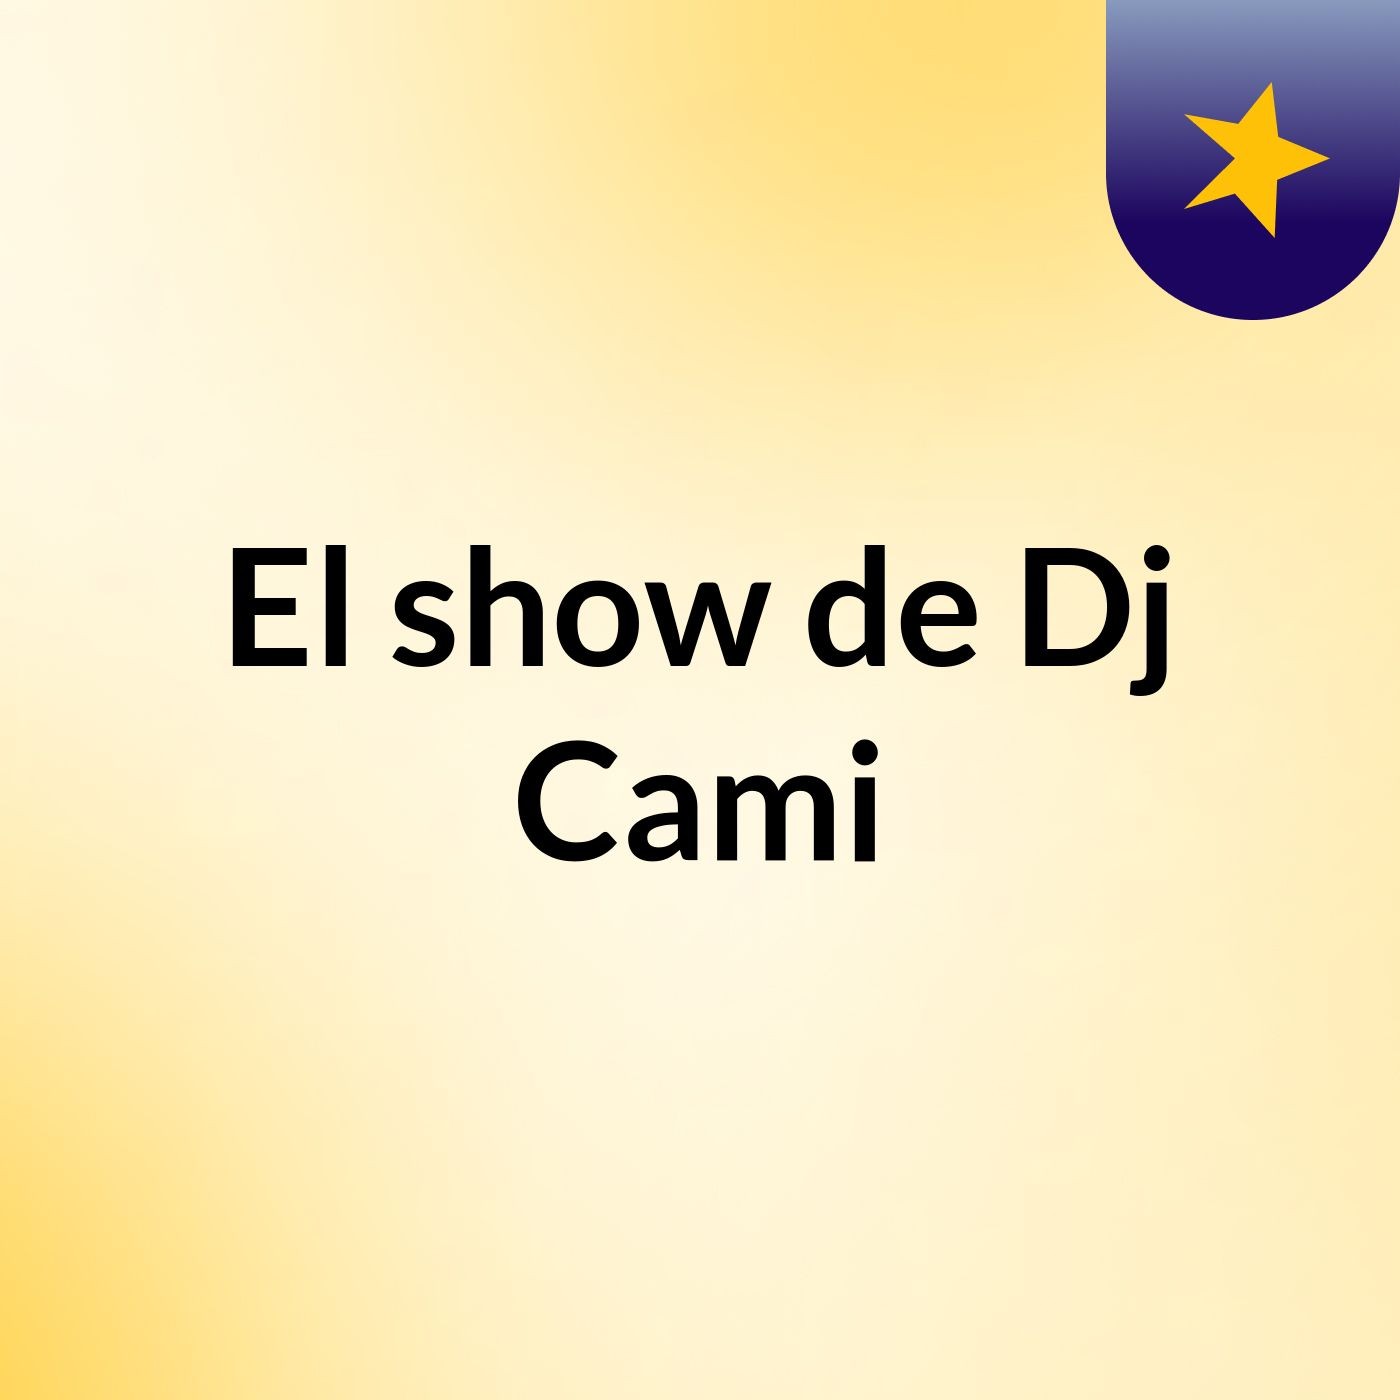 El show de Dj Cami